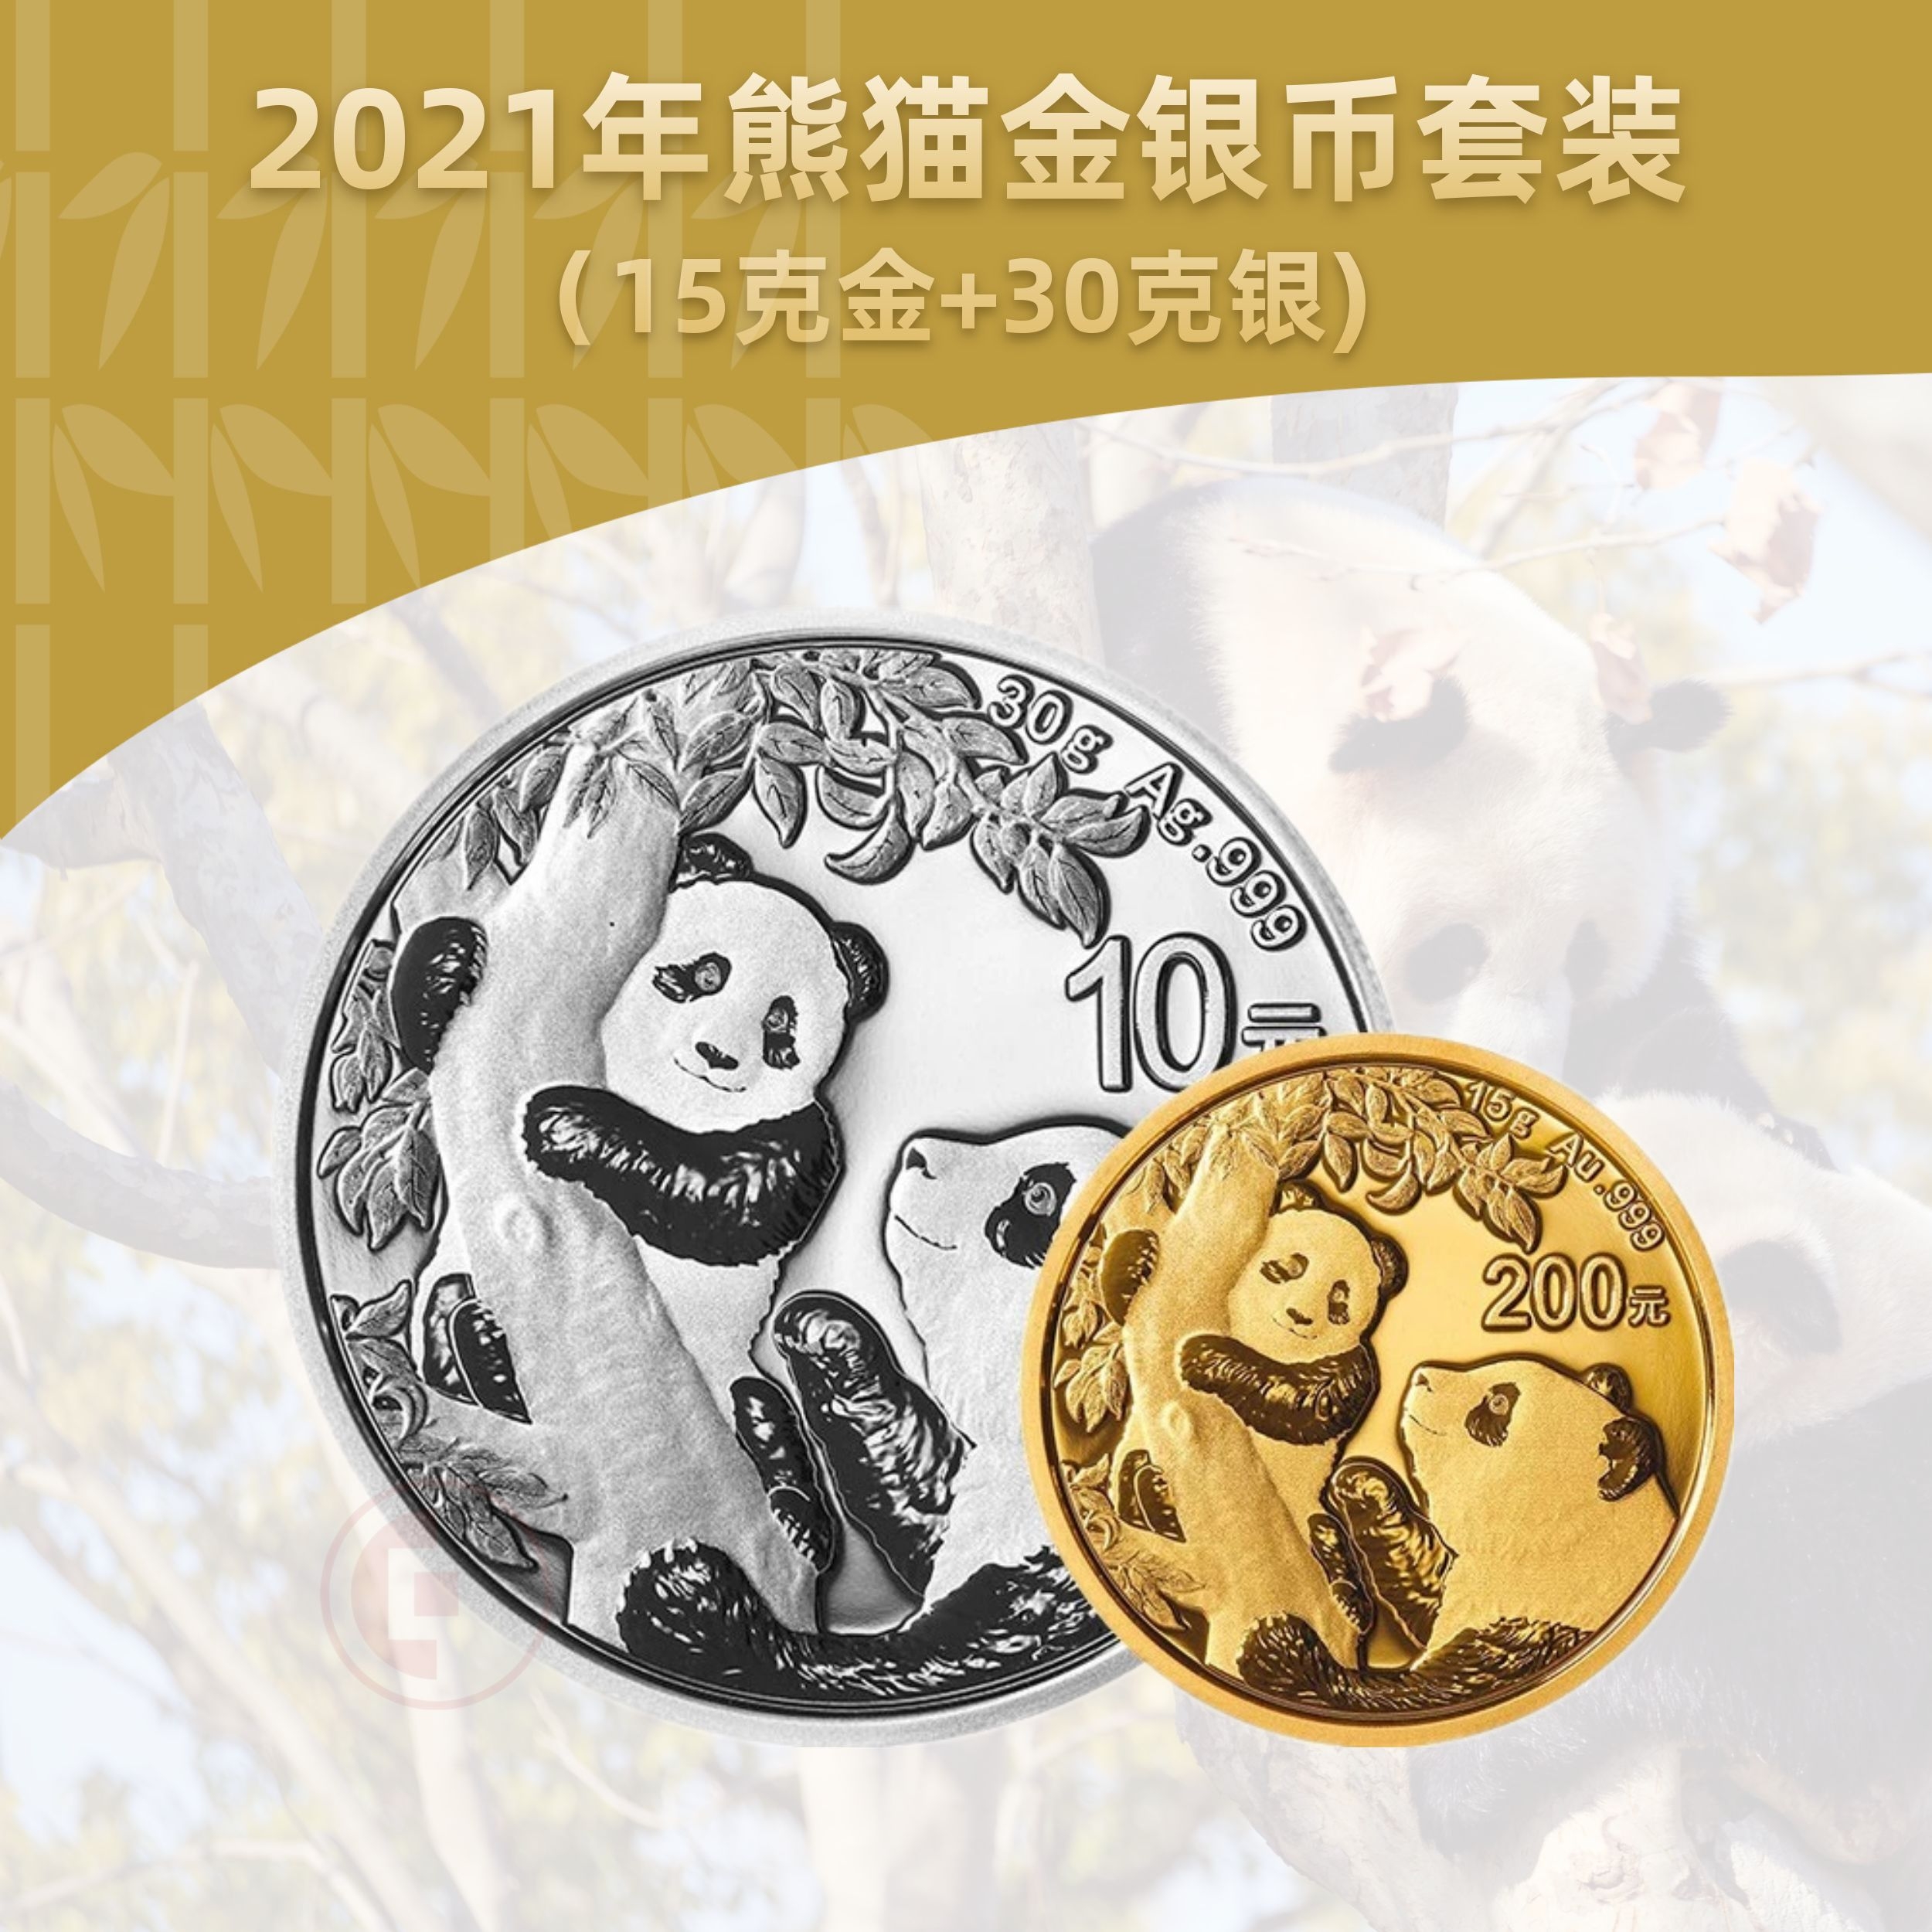 2021熊猫金银币套装  (15克金币+30克银币)